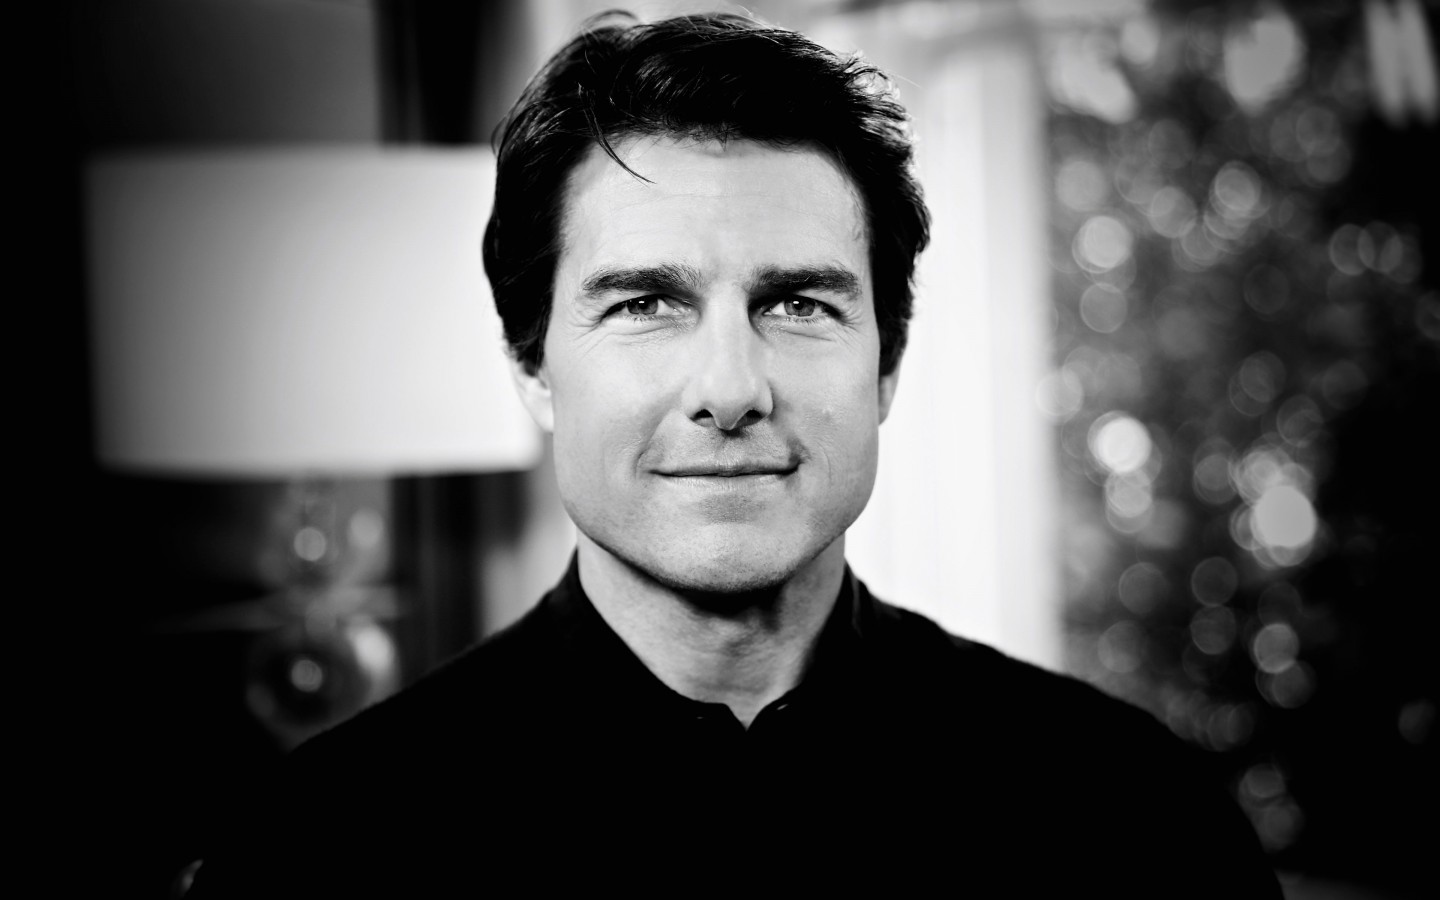 Tom Cruise Black & White Portrait Wallpaper for Desktop 1440x900